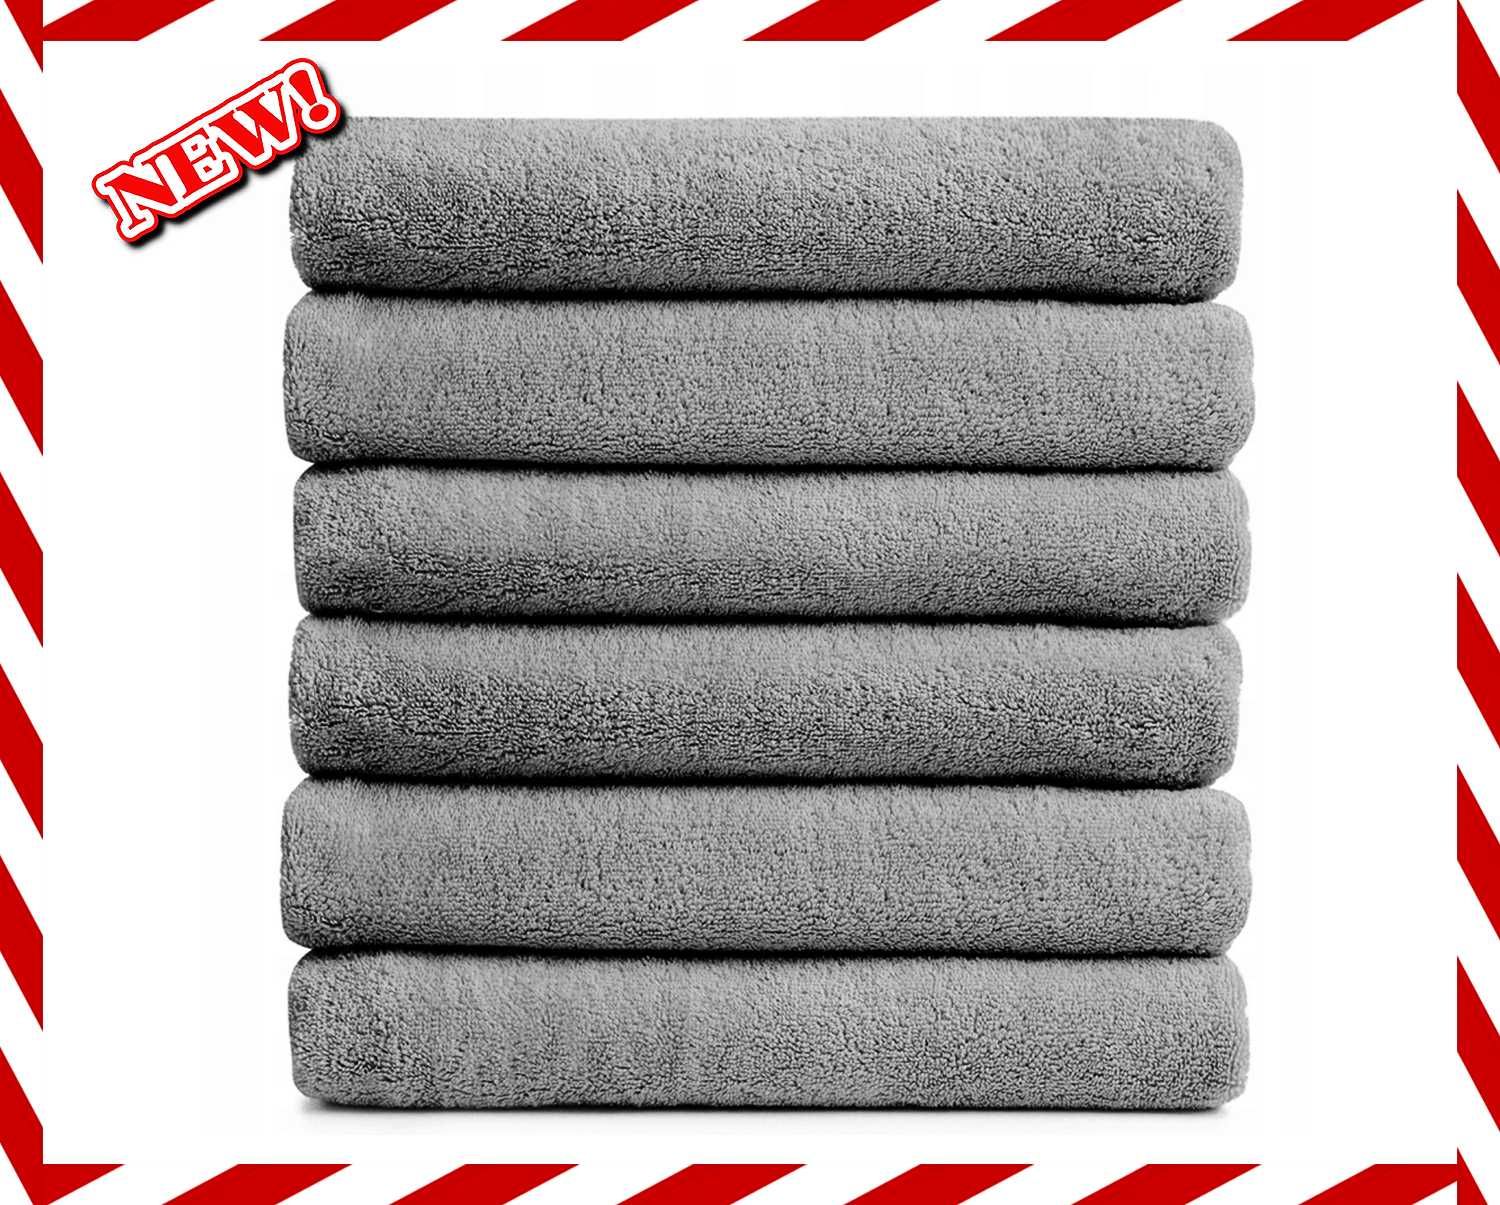 Nowoczesny Zestaw Ręczników Komplet 6szt 140x70 Bawełna *WYPRZEDAŻ*